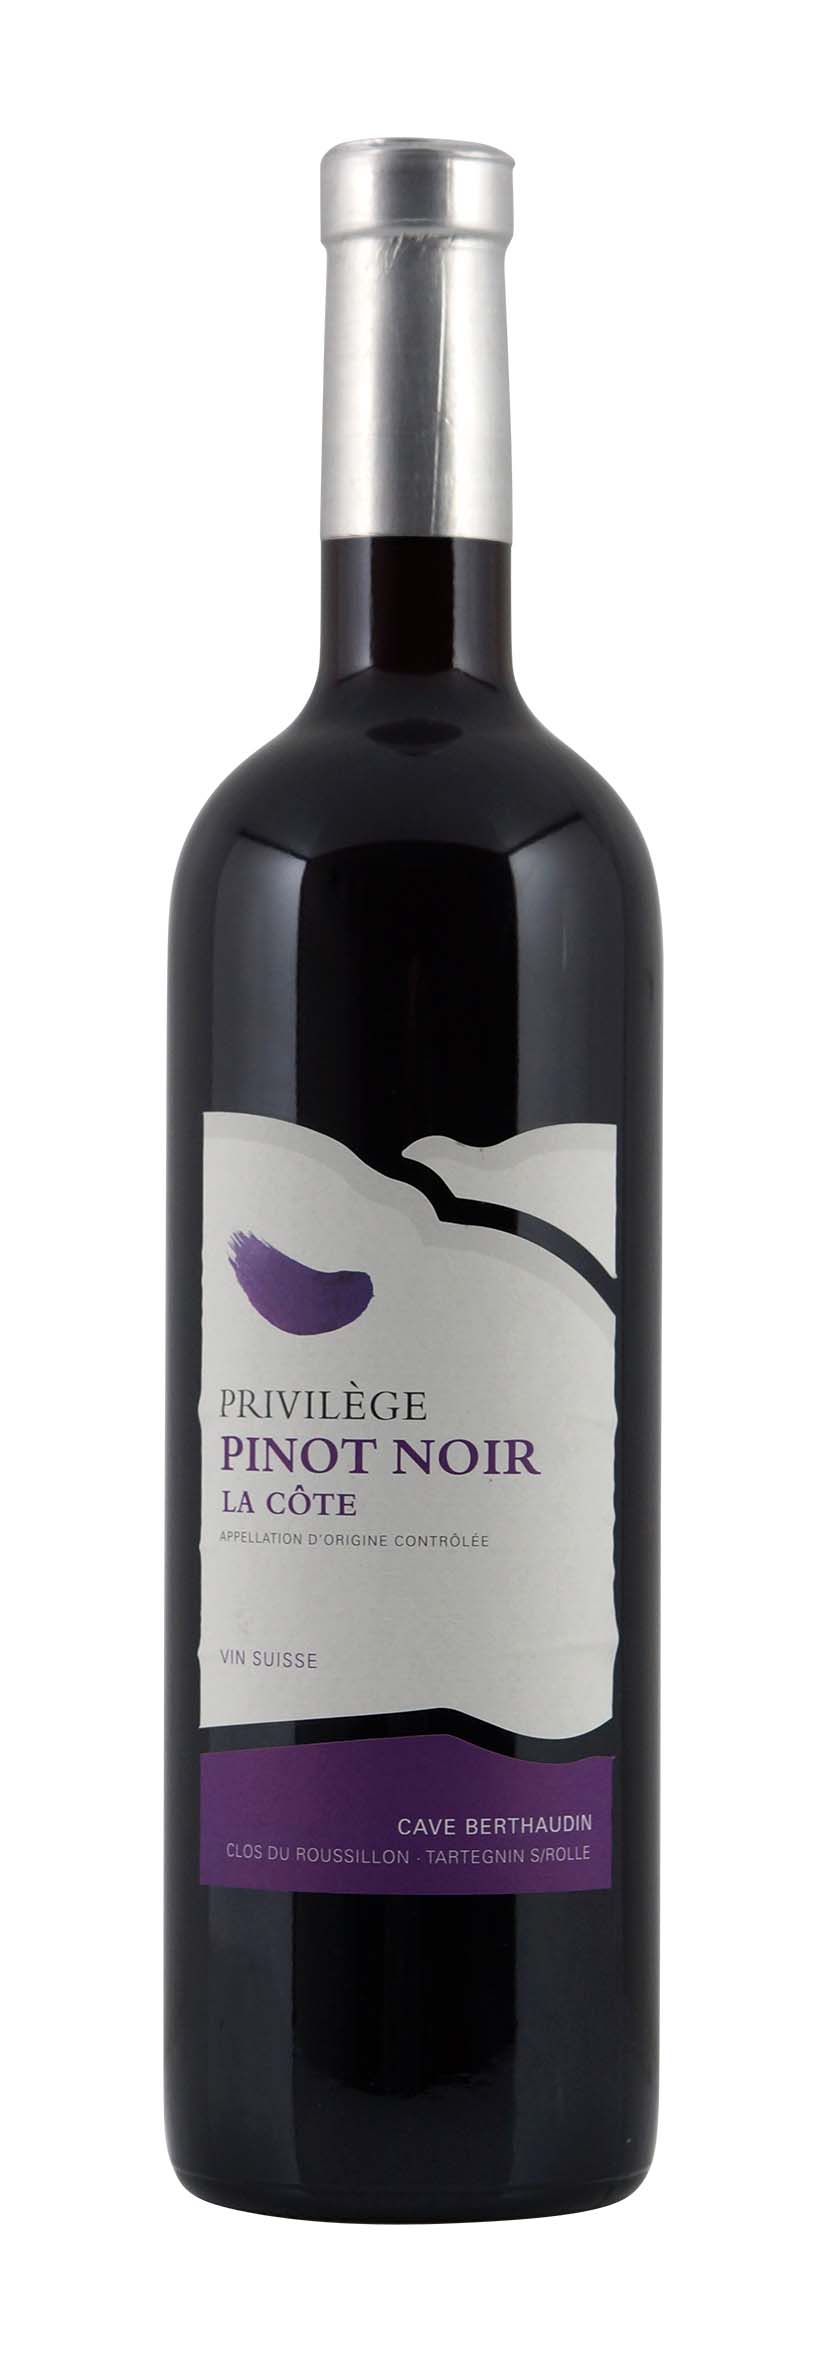 La Côte AOC Privilège Pinot Noir 2011